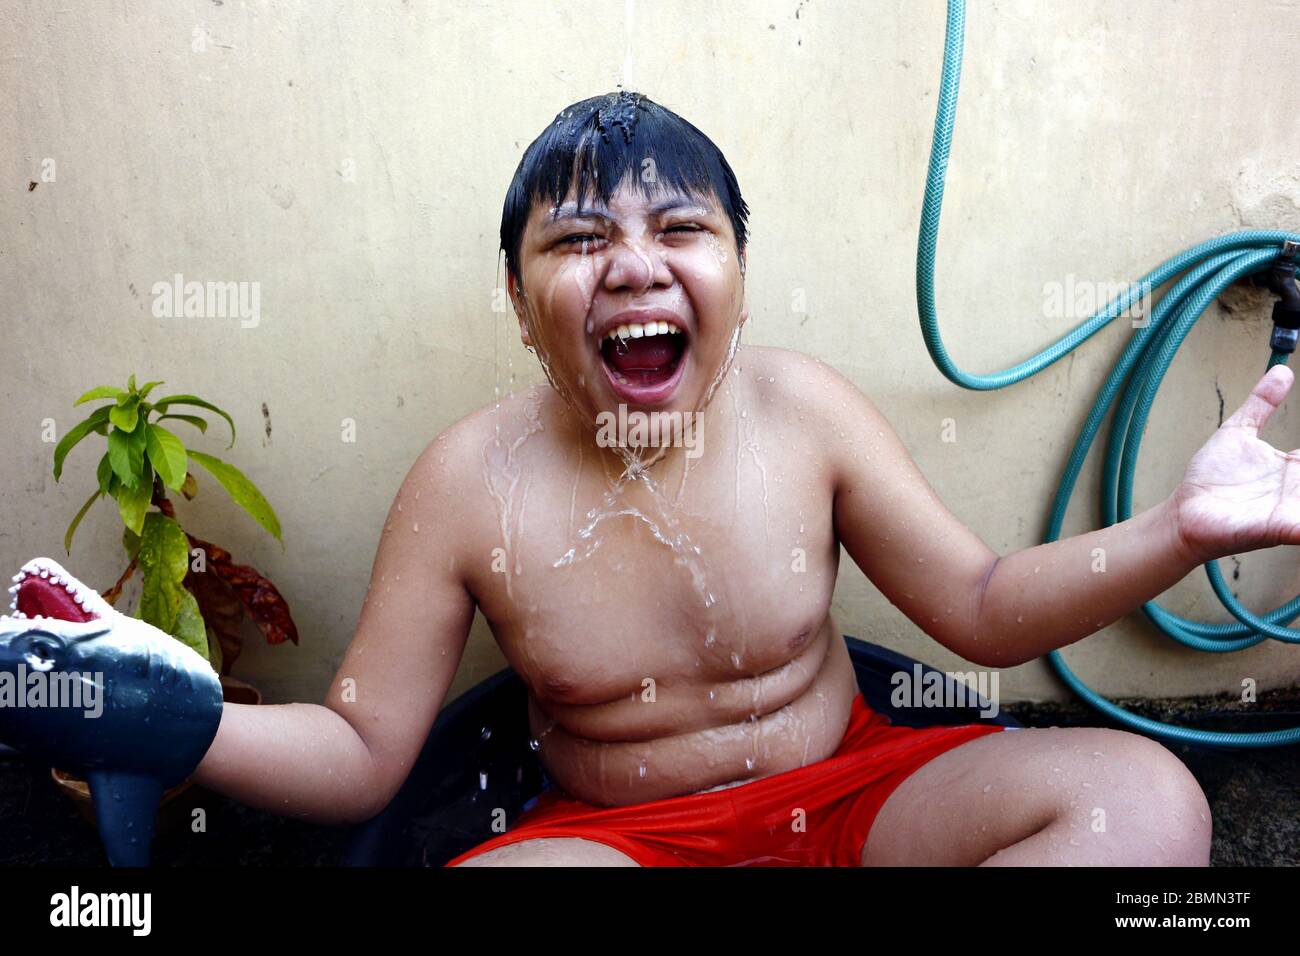 Photo d'un jeune garçon asiatique qui se rafraîchi dans un bassin d'eau et un tuyau d'eau comme une douche de fortune pour battre la chaleur estivale. Banque D'Images